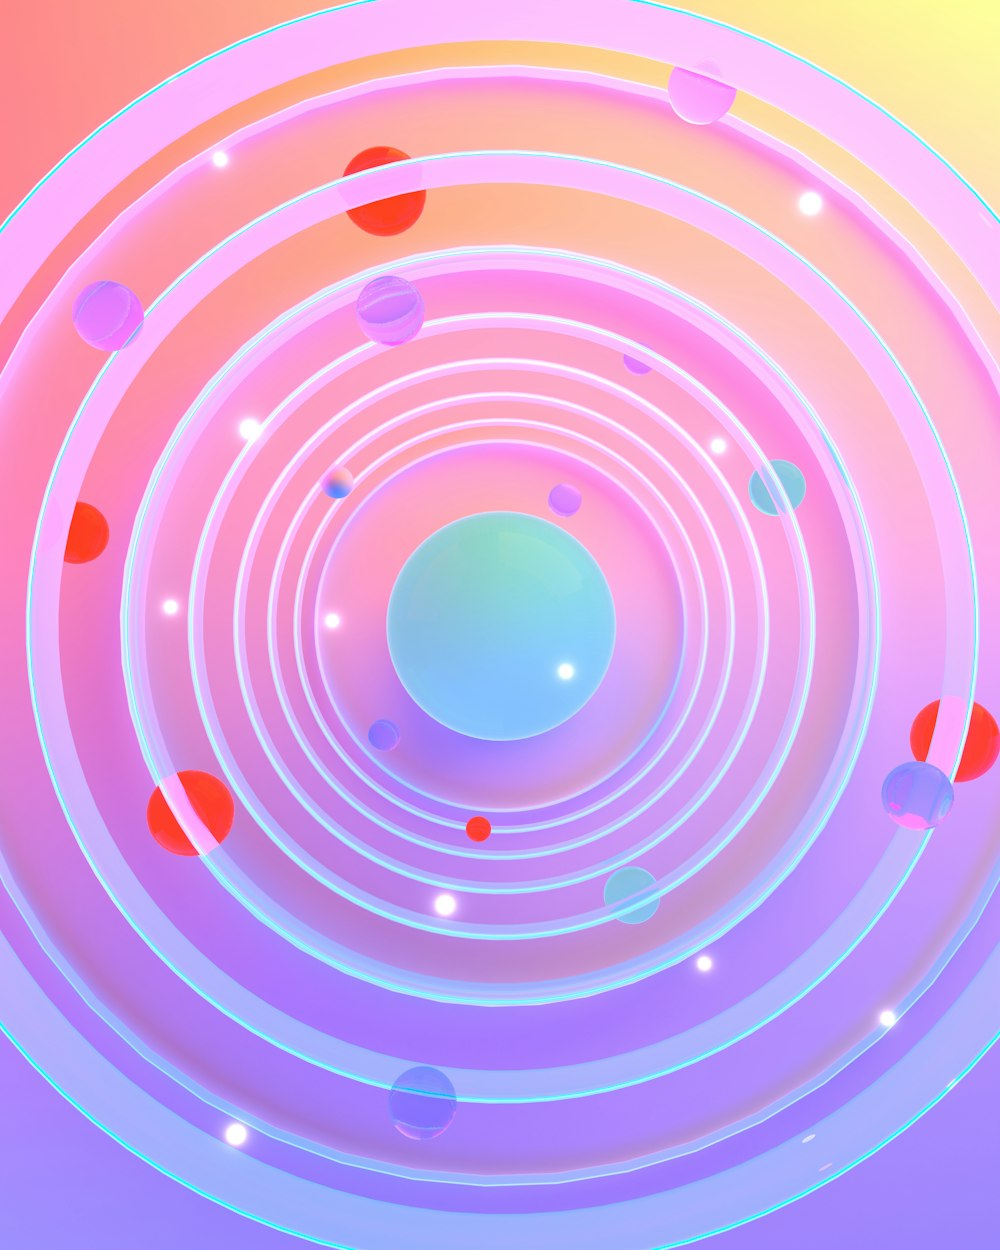 Ein abstraktes Foto eines kreisförmigen Objekts mit blauer Mitte